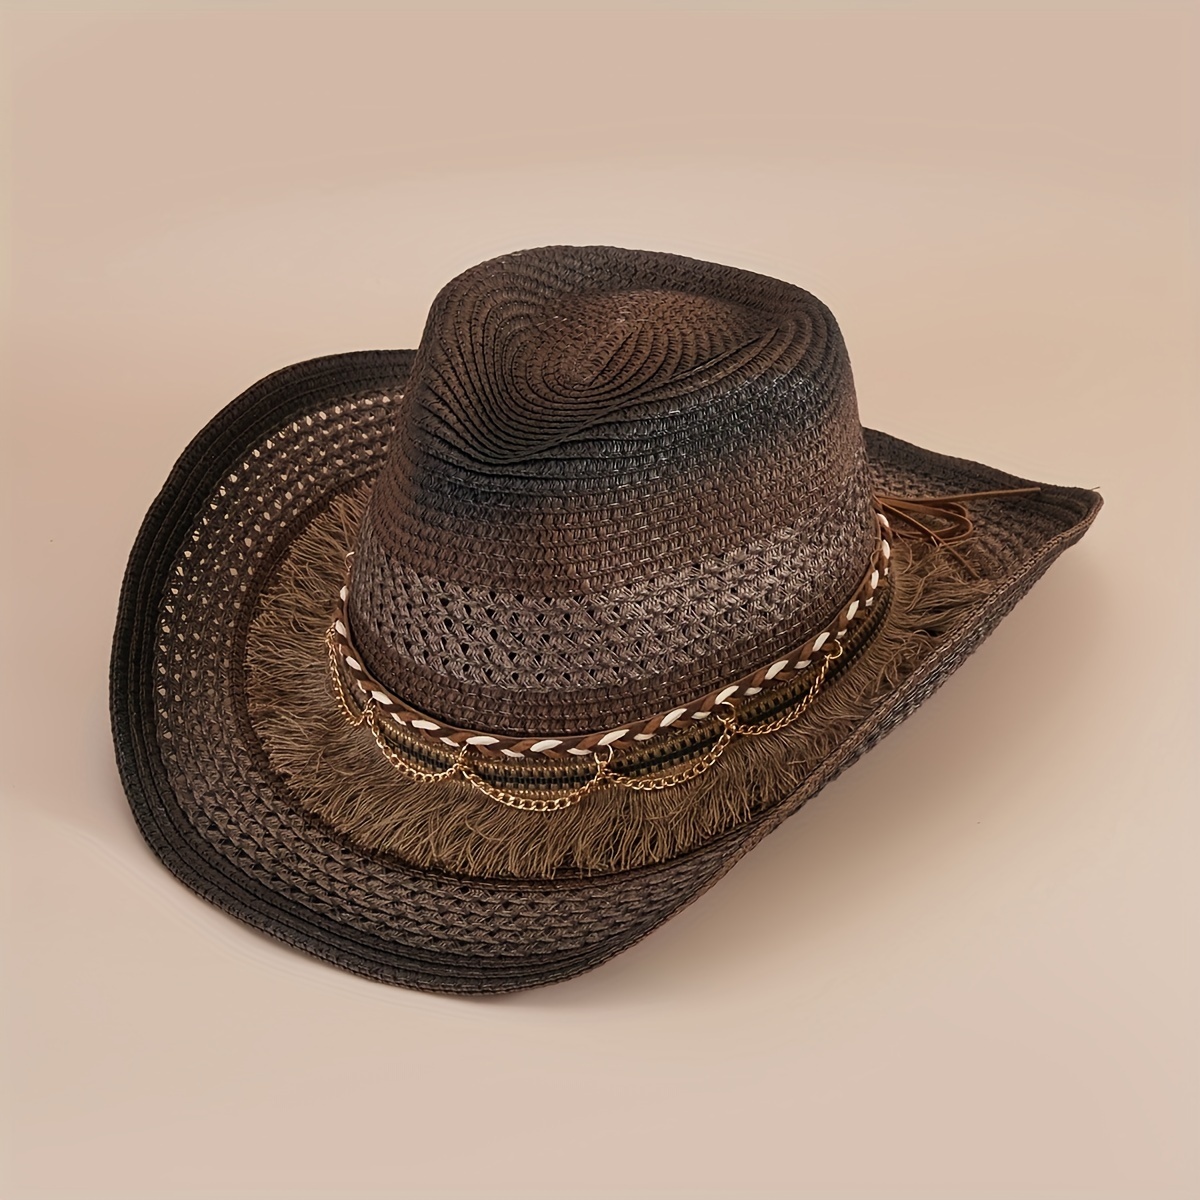 Cowboy Hat Classic Vintage Hollow Out Unisex Curled Edge Wide Brim Men Sun Hat  Fishing Hat